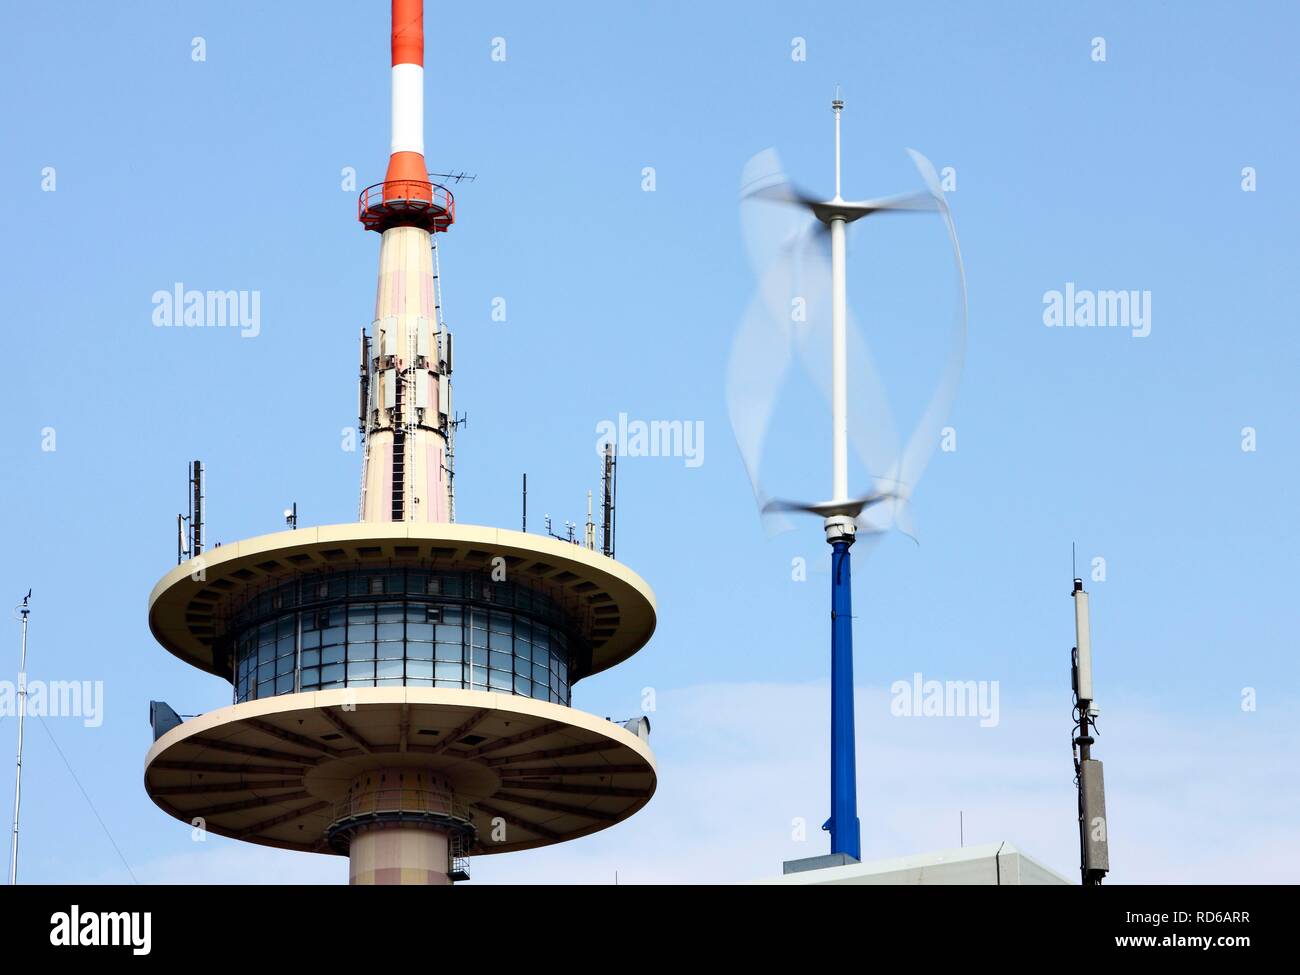 Verticale di micro turbina eolica, le piccole turbine eoliche sul tetto dell'edificio ETEC, una pianta di prova della controllata di RWE RWE Innogy Foto Stock